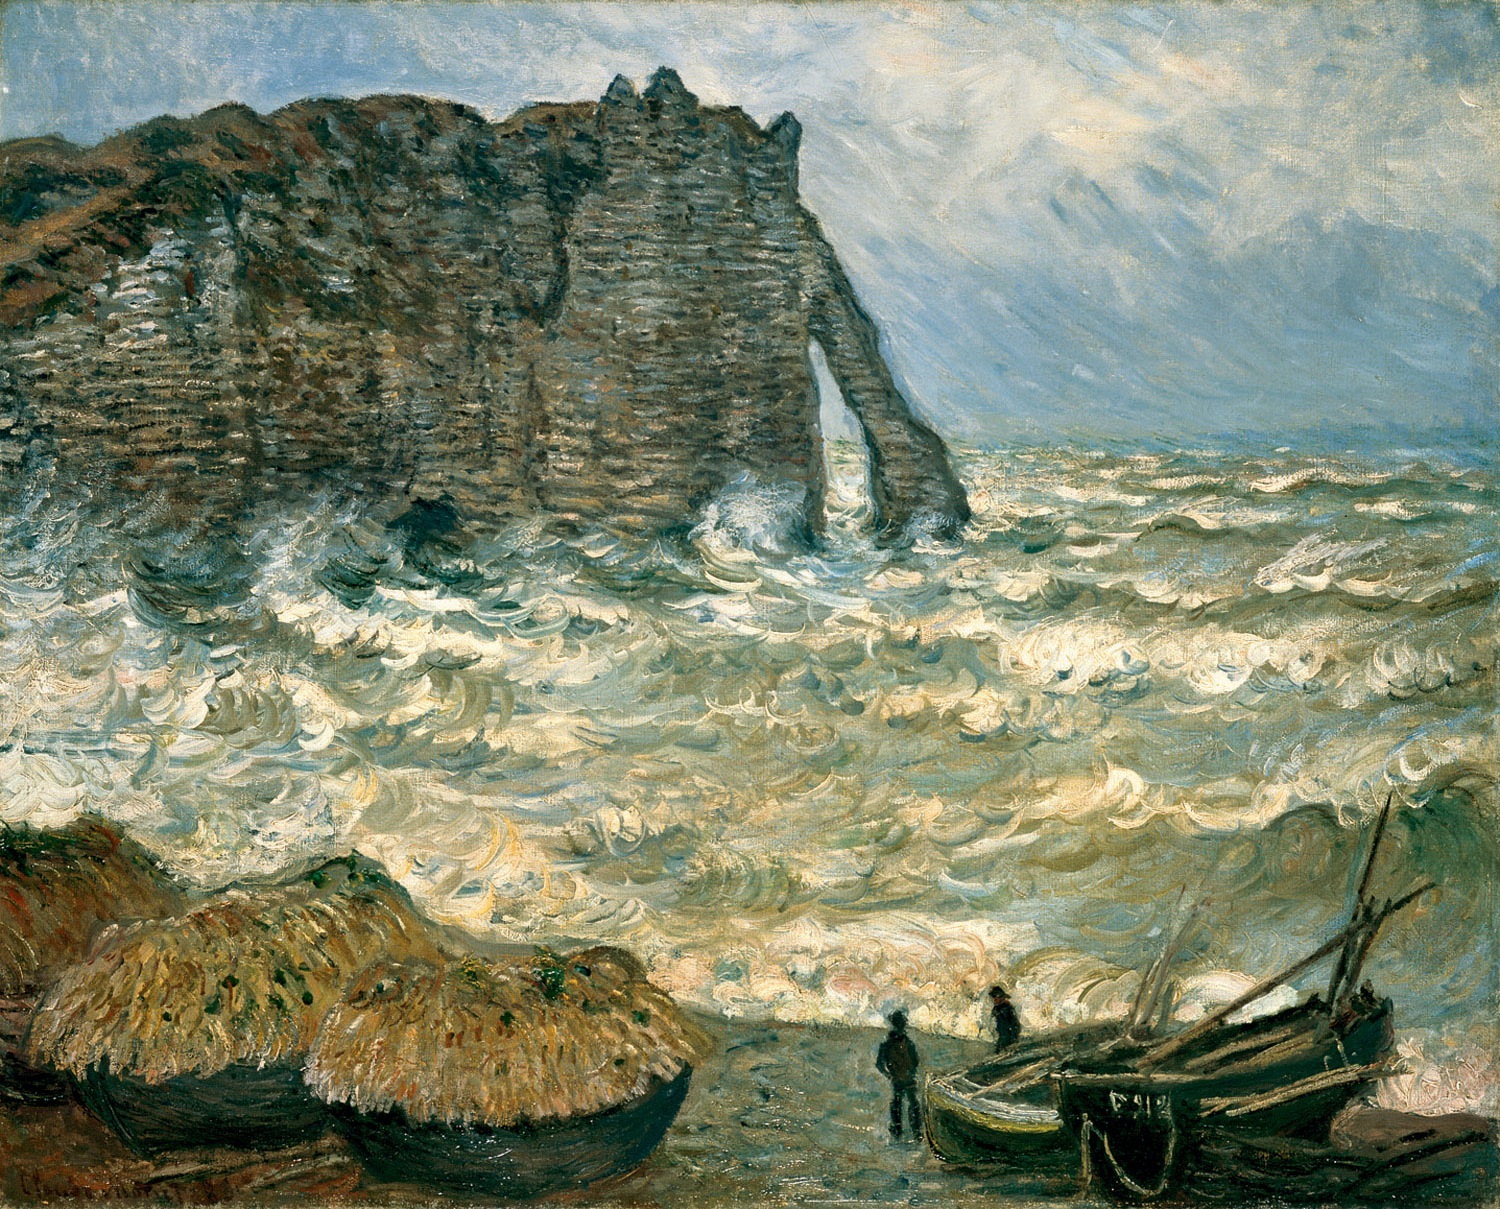 بحر هائج في إتريتا by Claude Monet - 1883 - 81x 100 cm 